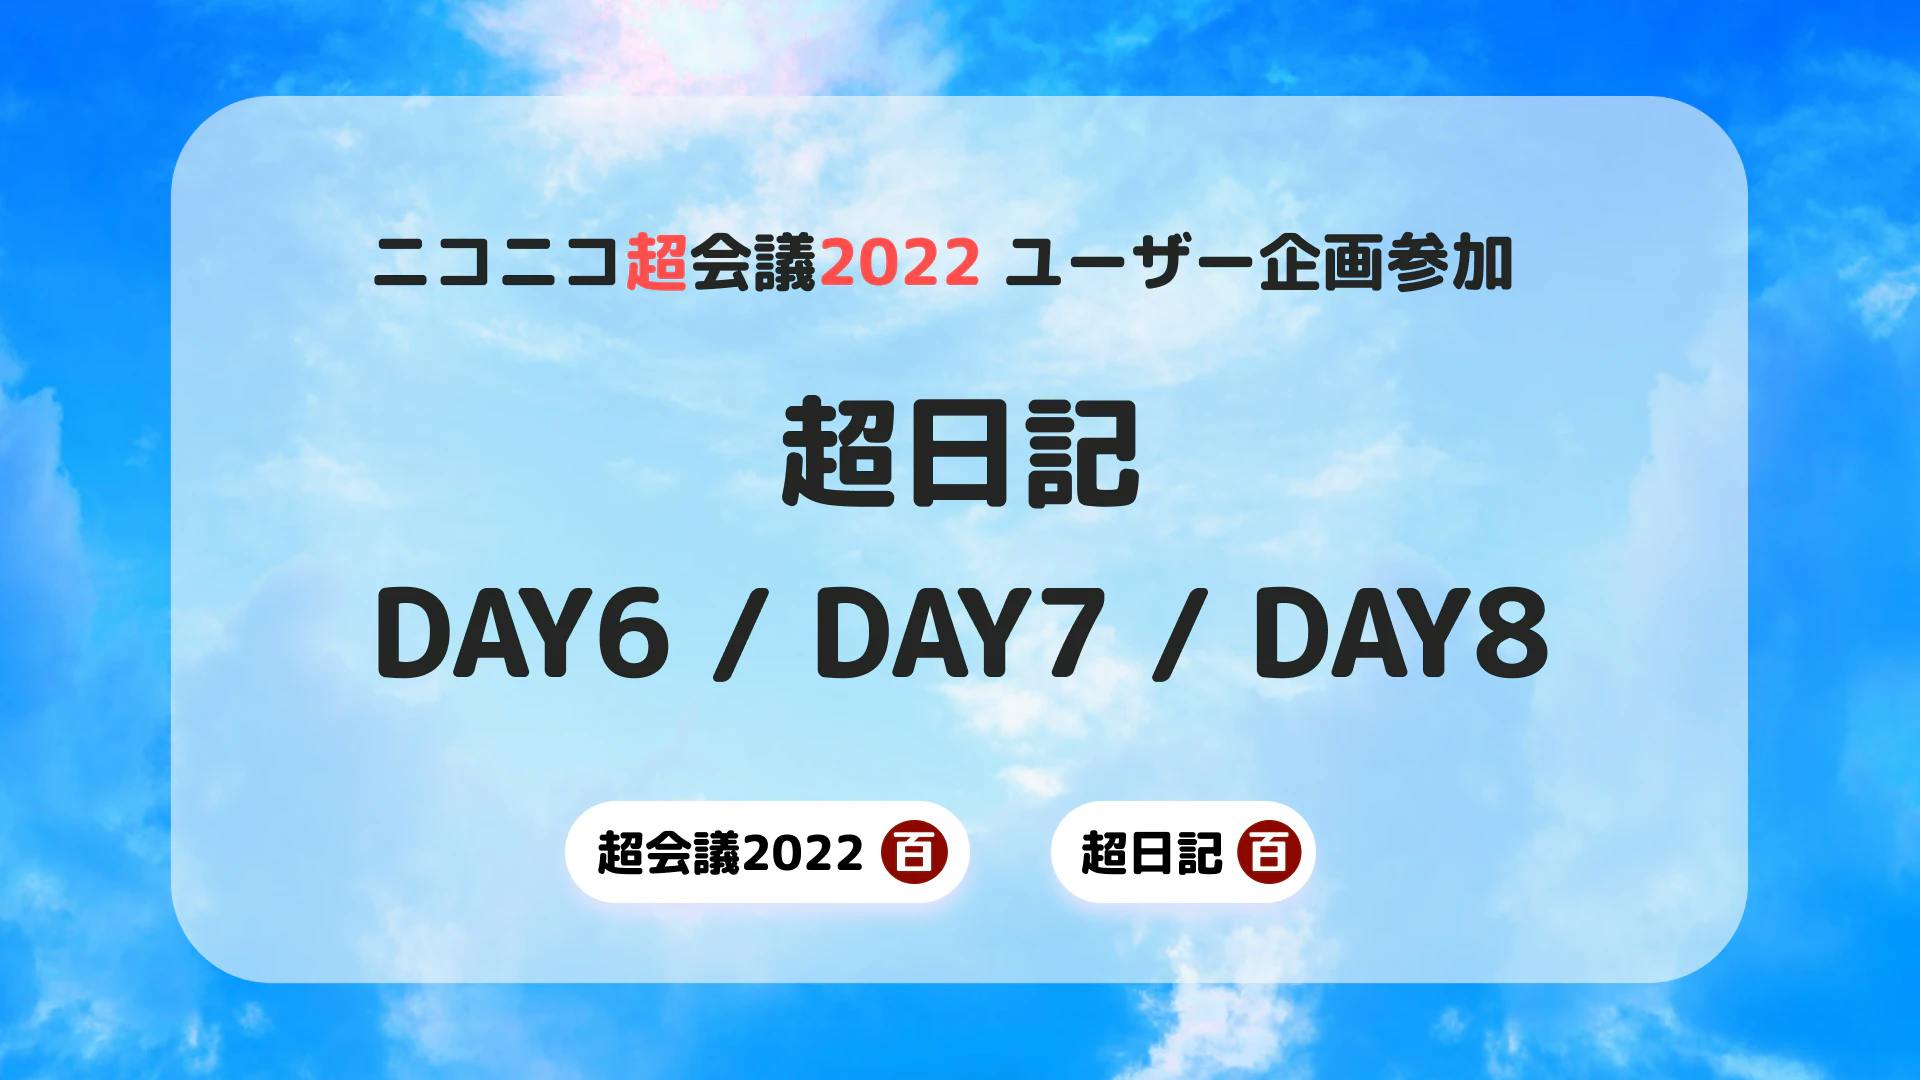 [超会議2022] 超日記 DAY6/DAY7/DAY8